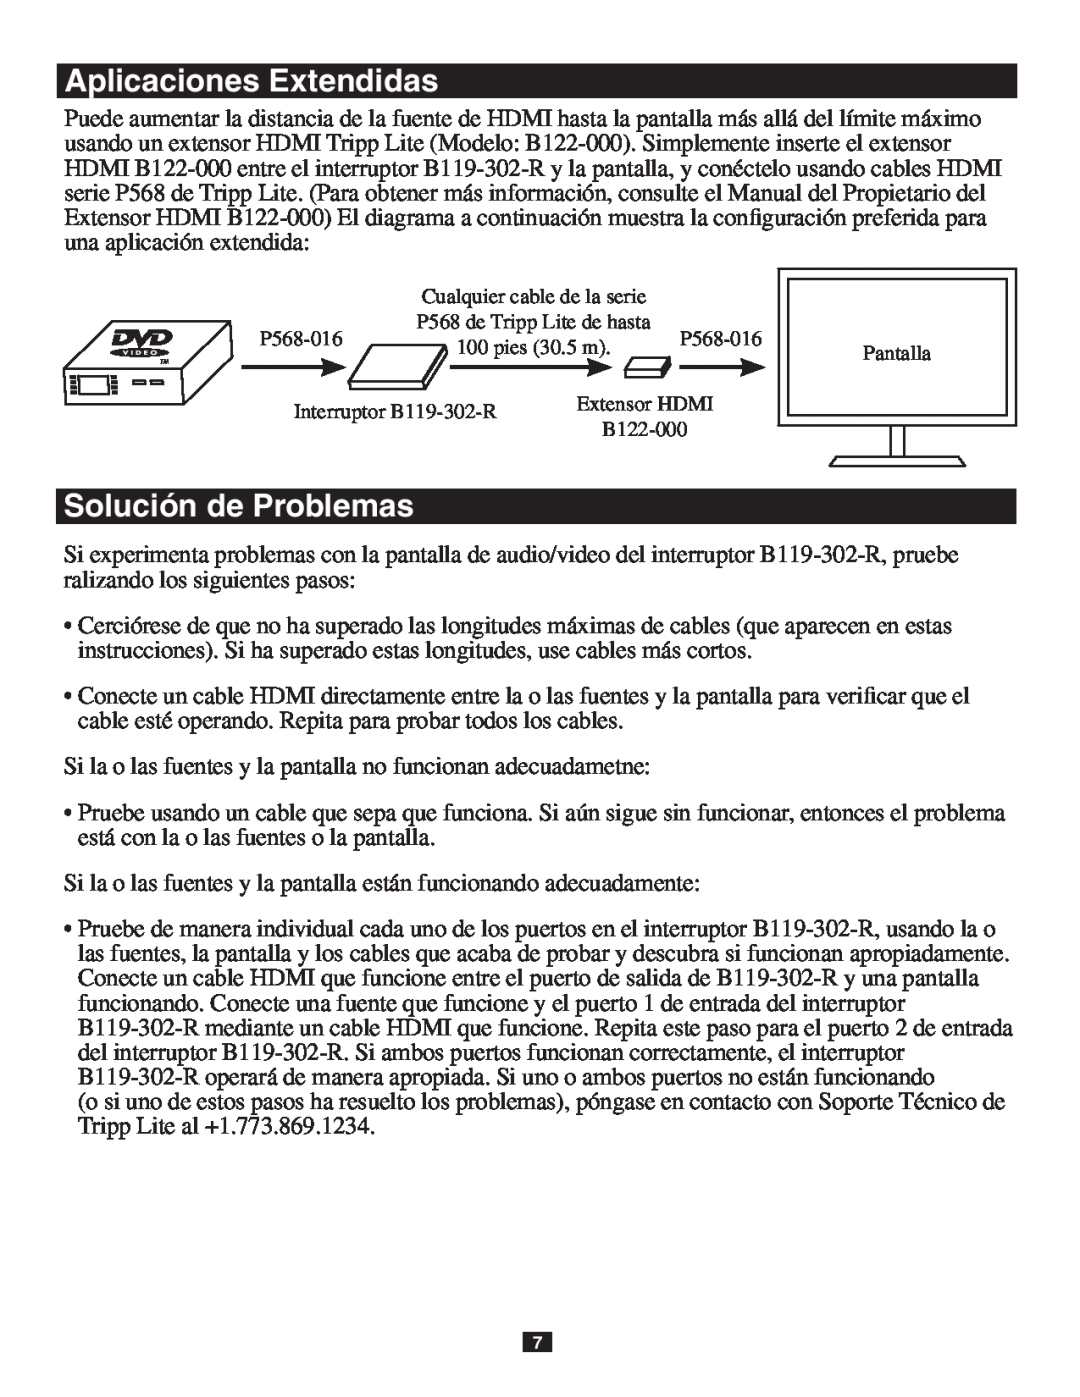 Tripp Lite B119-302-R owner manual Aplicaciones Extendidas, Solución de Problemas 